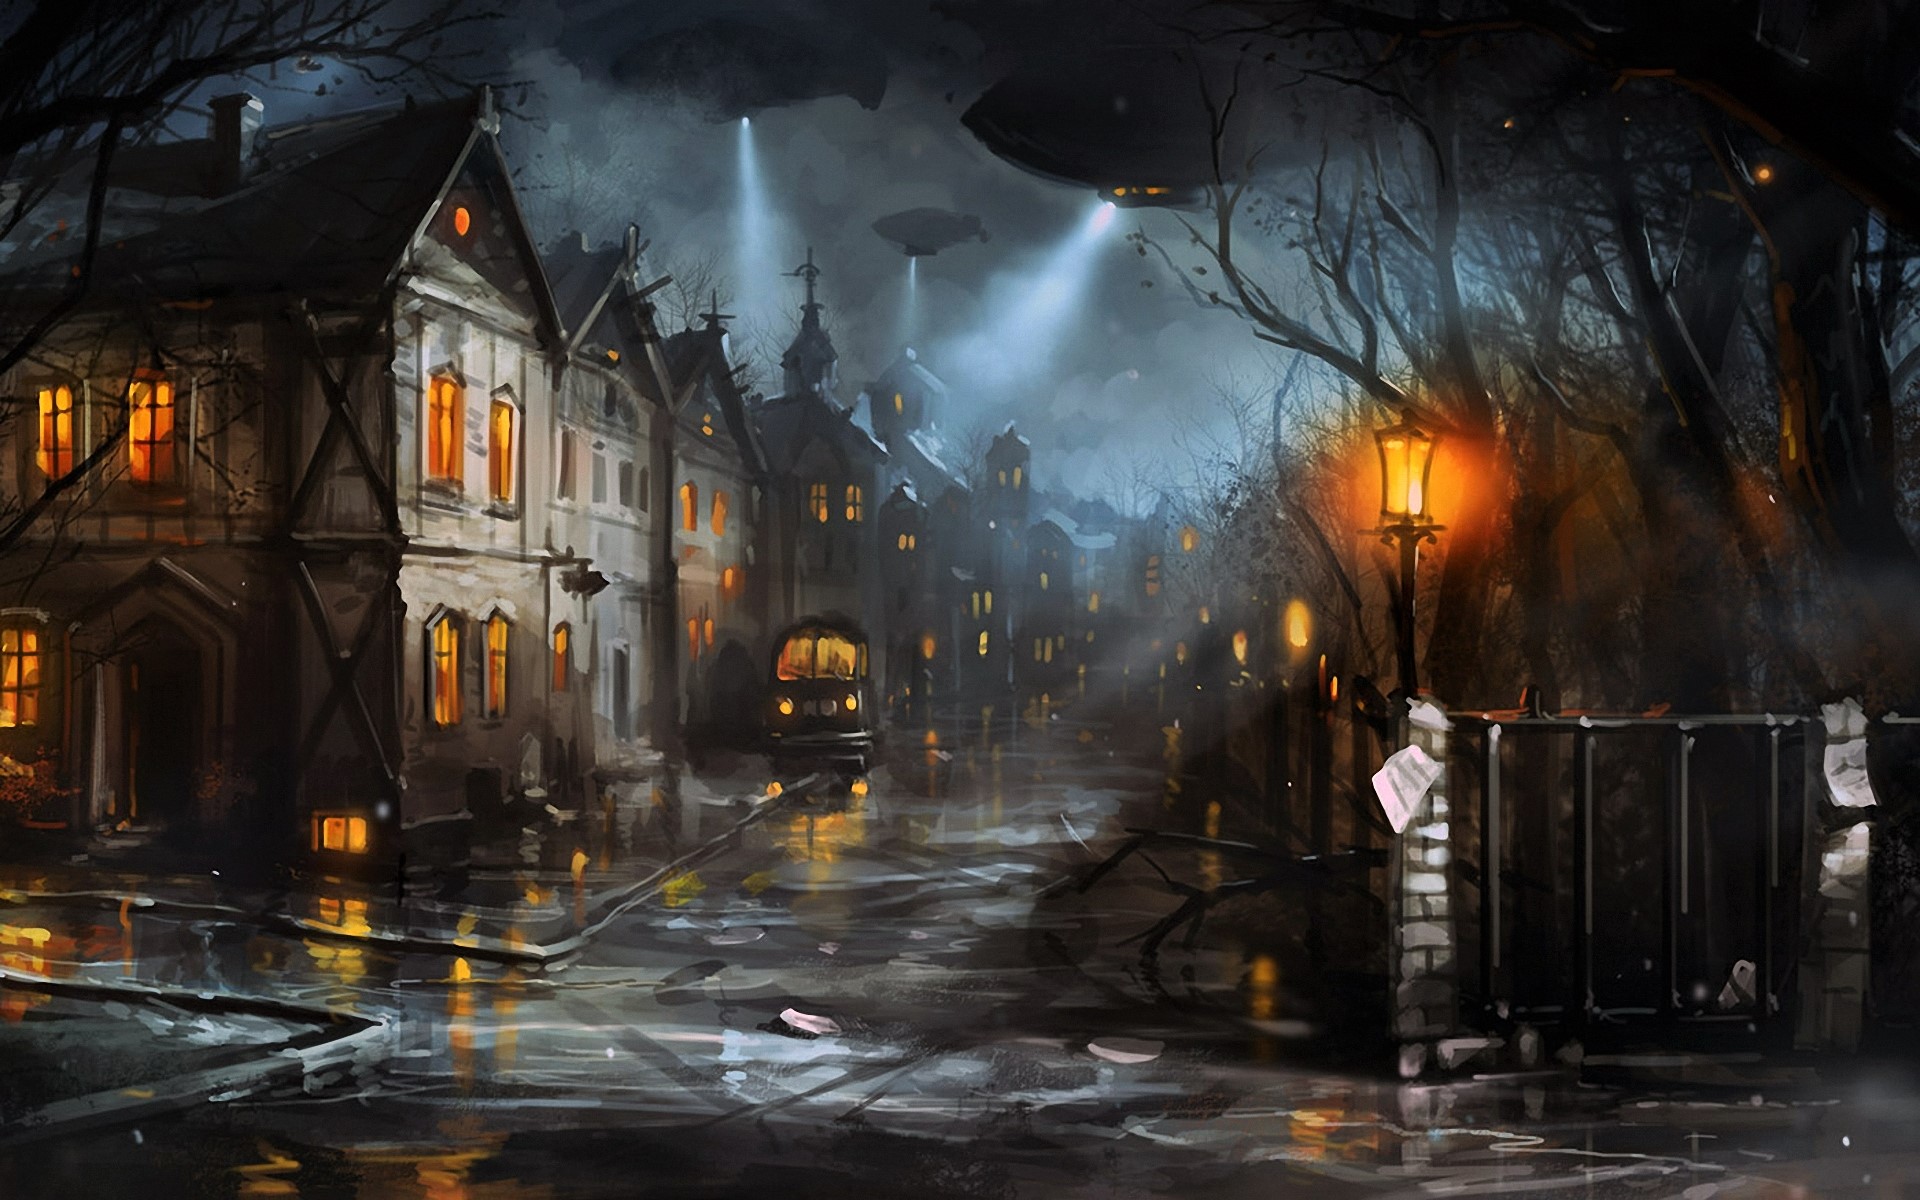 Night Street by Igor Artyomenko